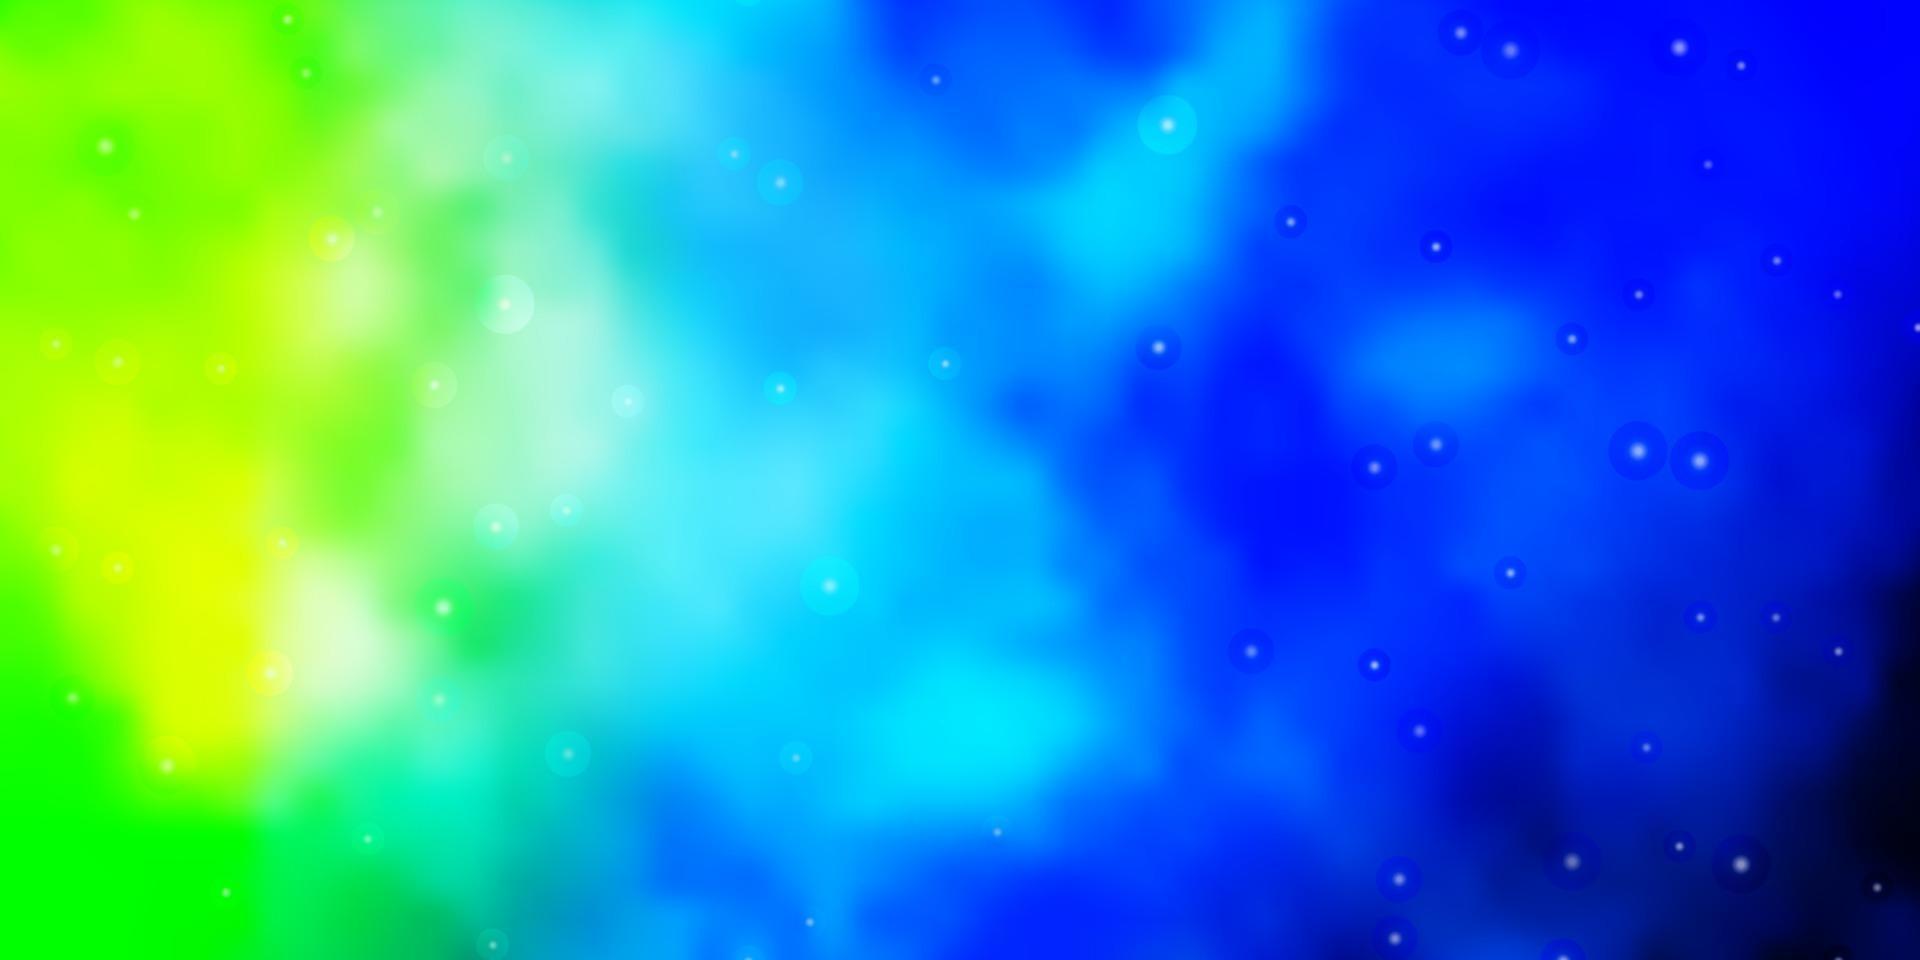 hellblauer, grüner Vektorhintergrund mit bunten Sternen. vektor